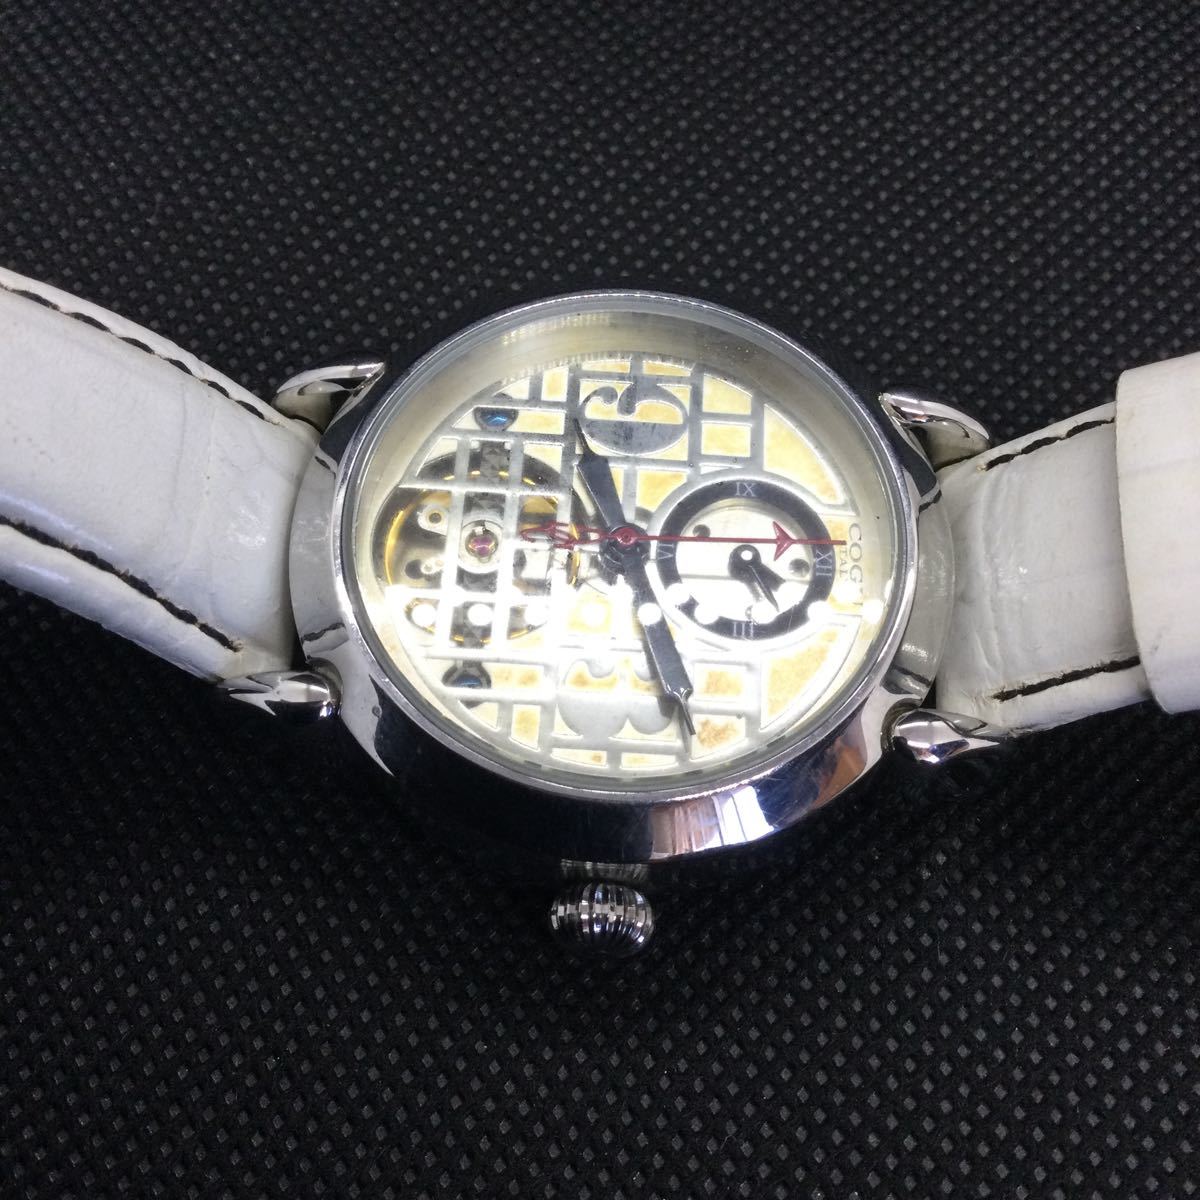 COGU ITARY 自動巻き スケルトン DUAL TIME腕時計 の画像6